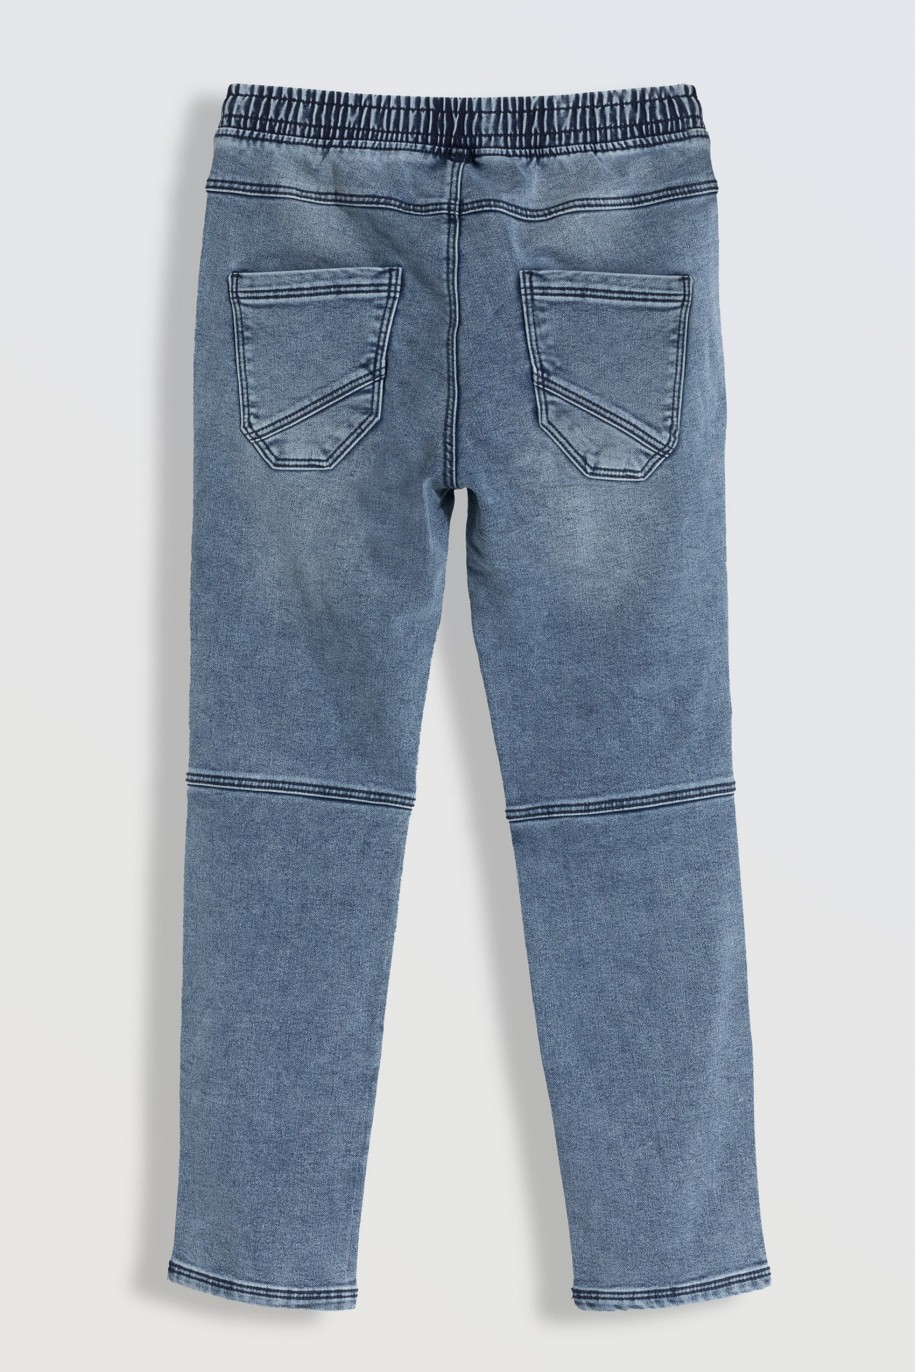 Niebieskie marmurkowe jeansy typu joggery z kieszeniami - 46252